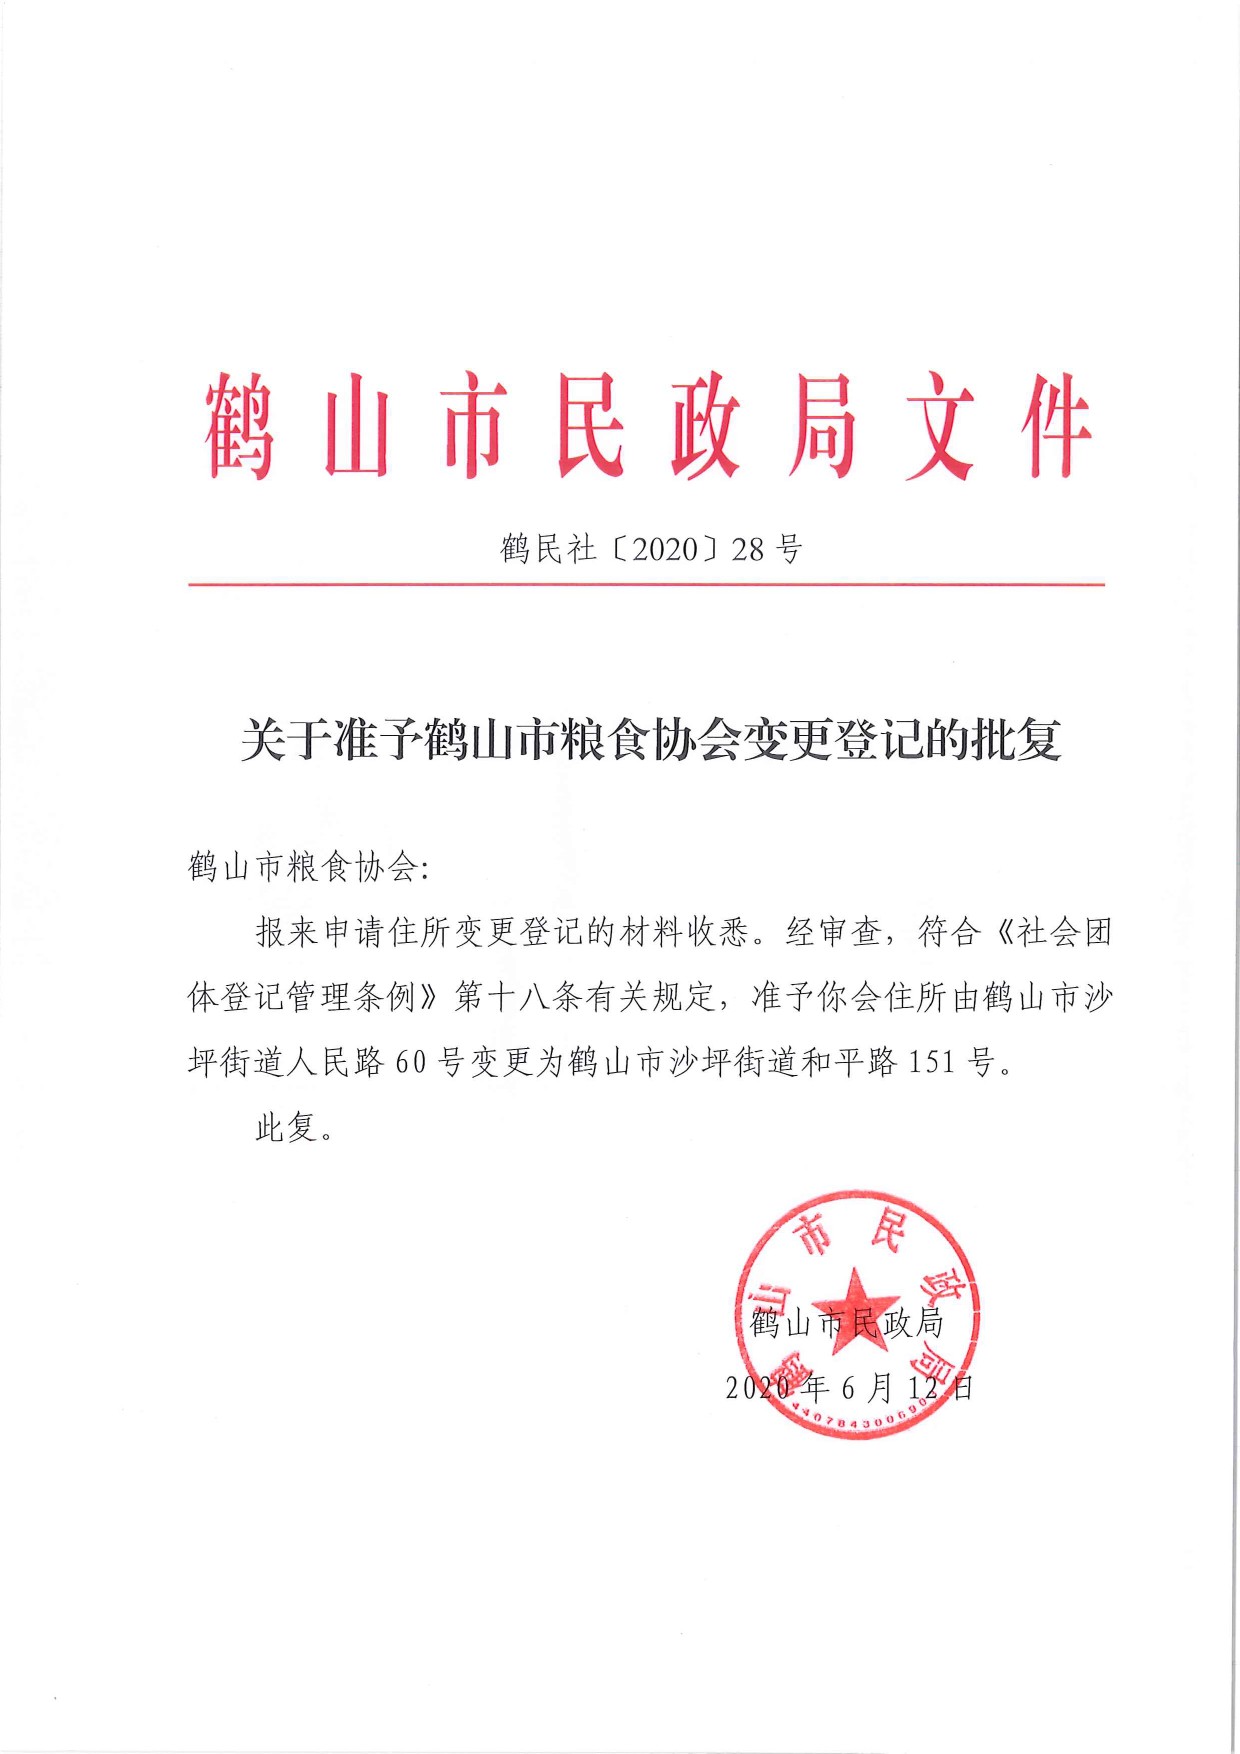 鹤民社〔2020〕28号关于准予鹤山市粮食协会变更登记的批复-1.jpg